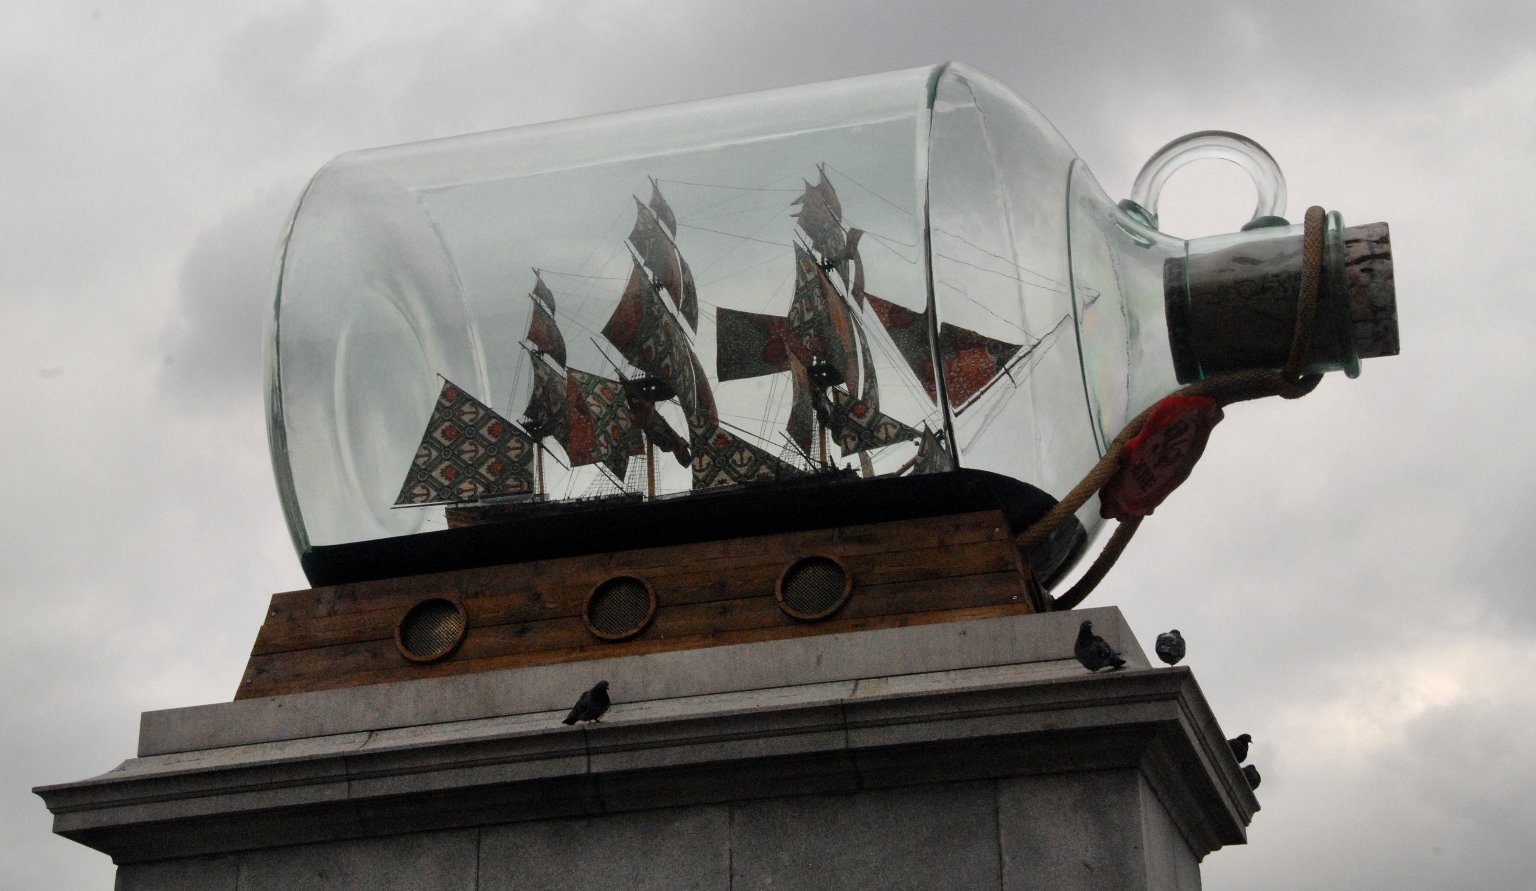 Nelson's Ship in a Bottle